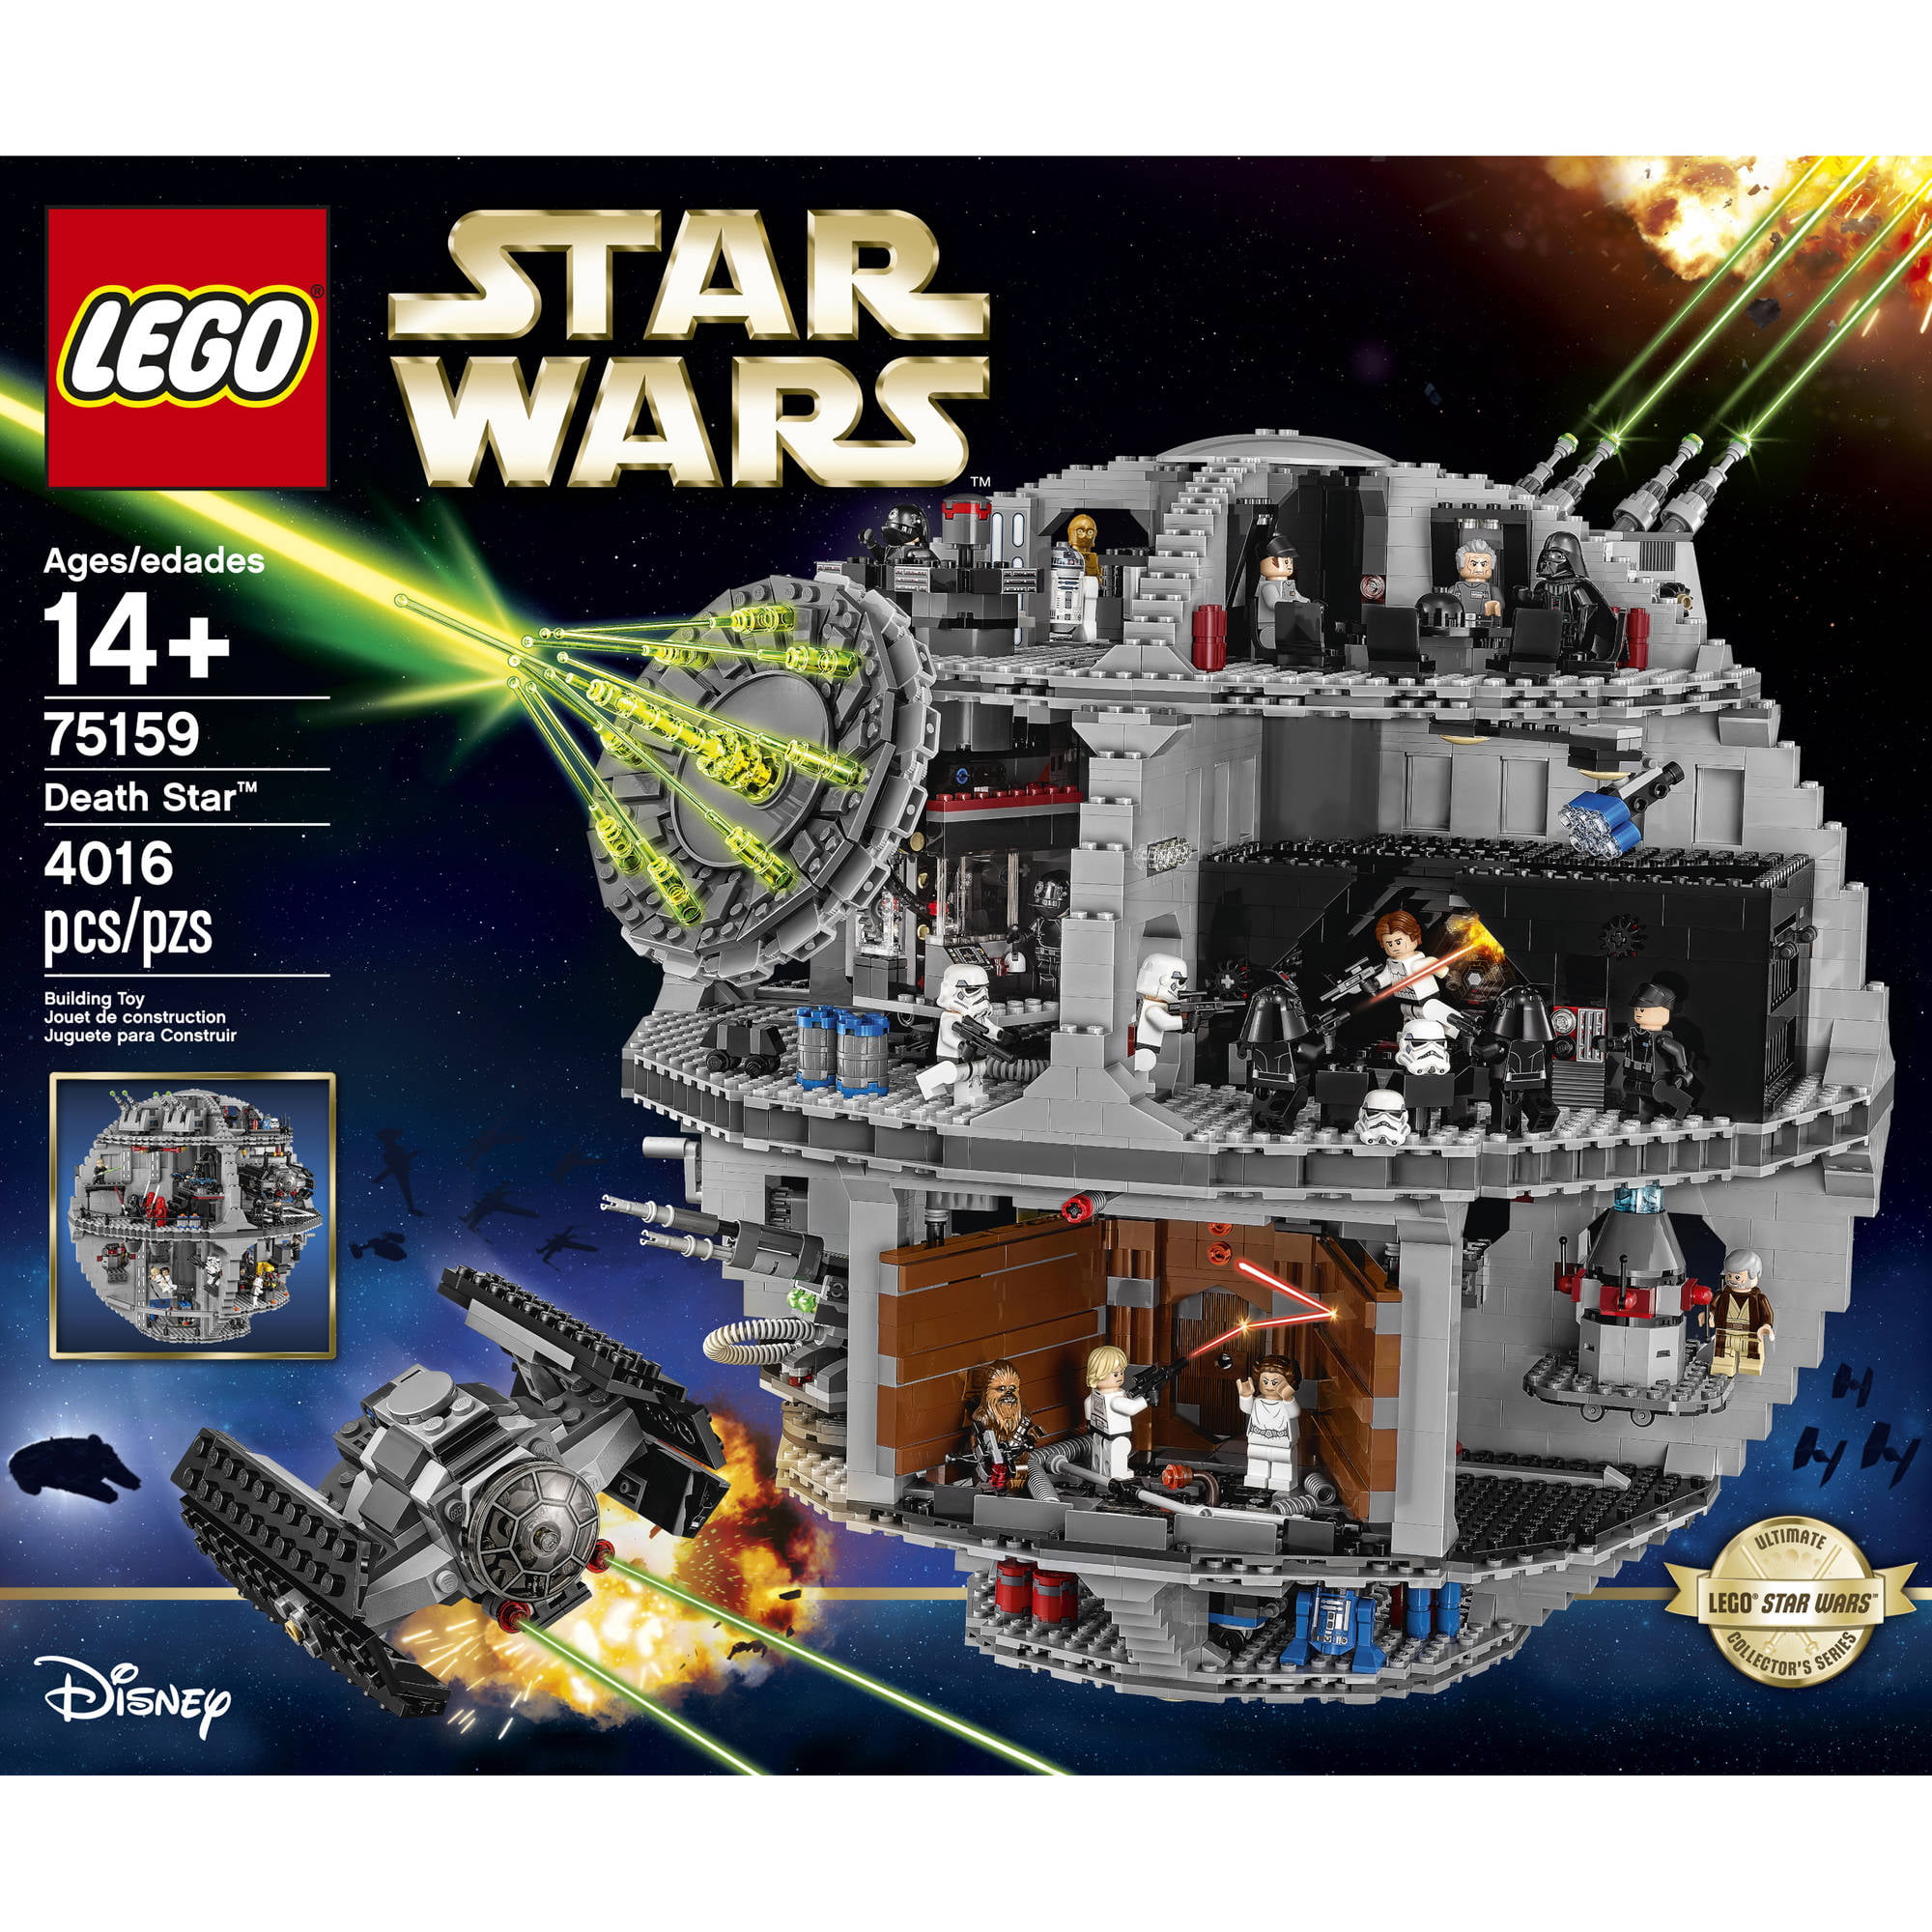 th Udled udvande LEGO Star Wars Death Star 75159 Collectbile Building Set - Walmart.com